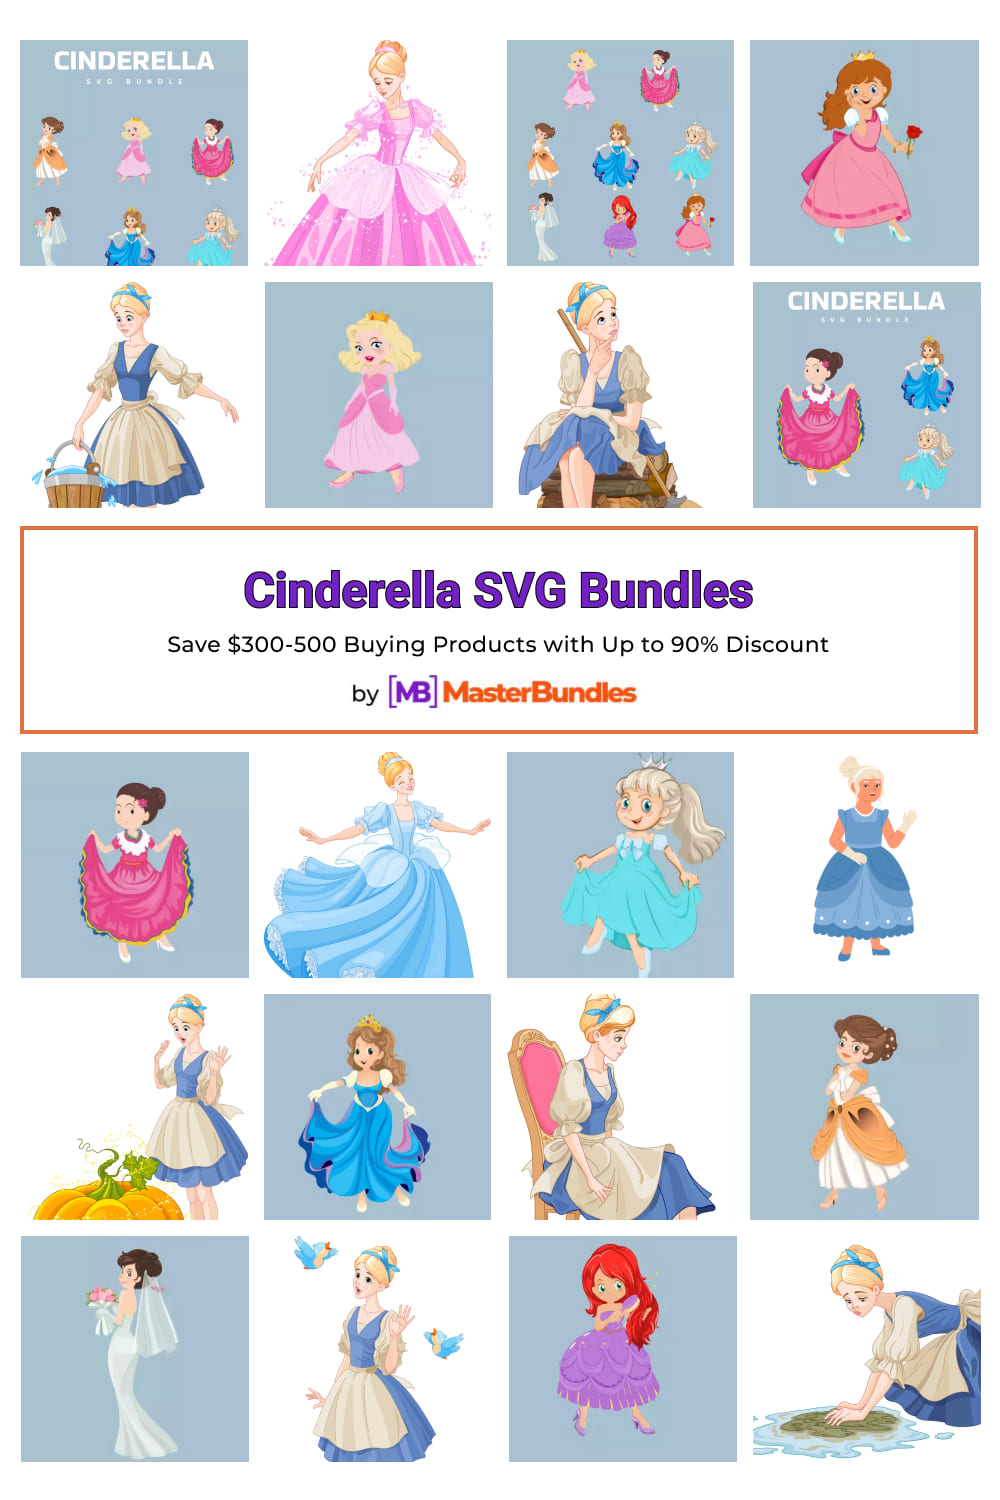 Cinderella SVG Bundles for Pinterest.